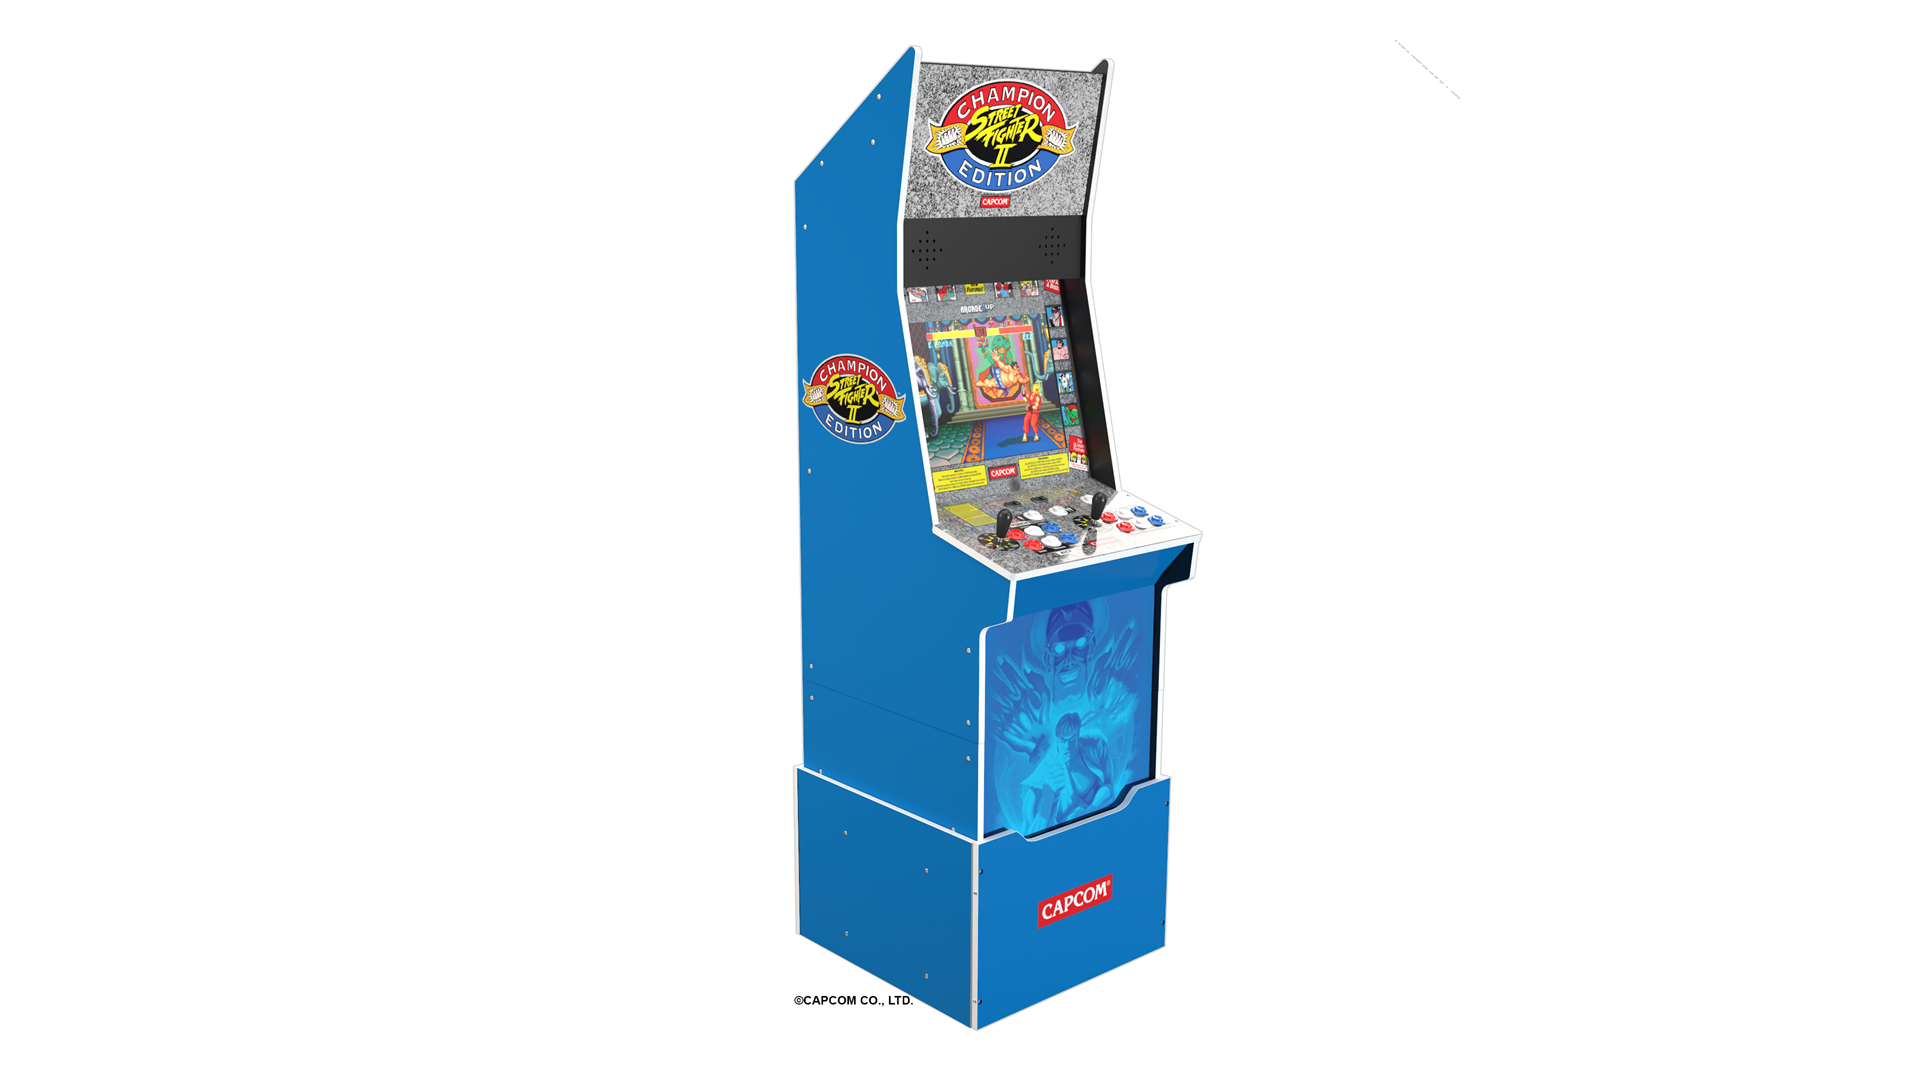 Một cỗ máy 'Street Fighter II' màu xanh lam